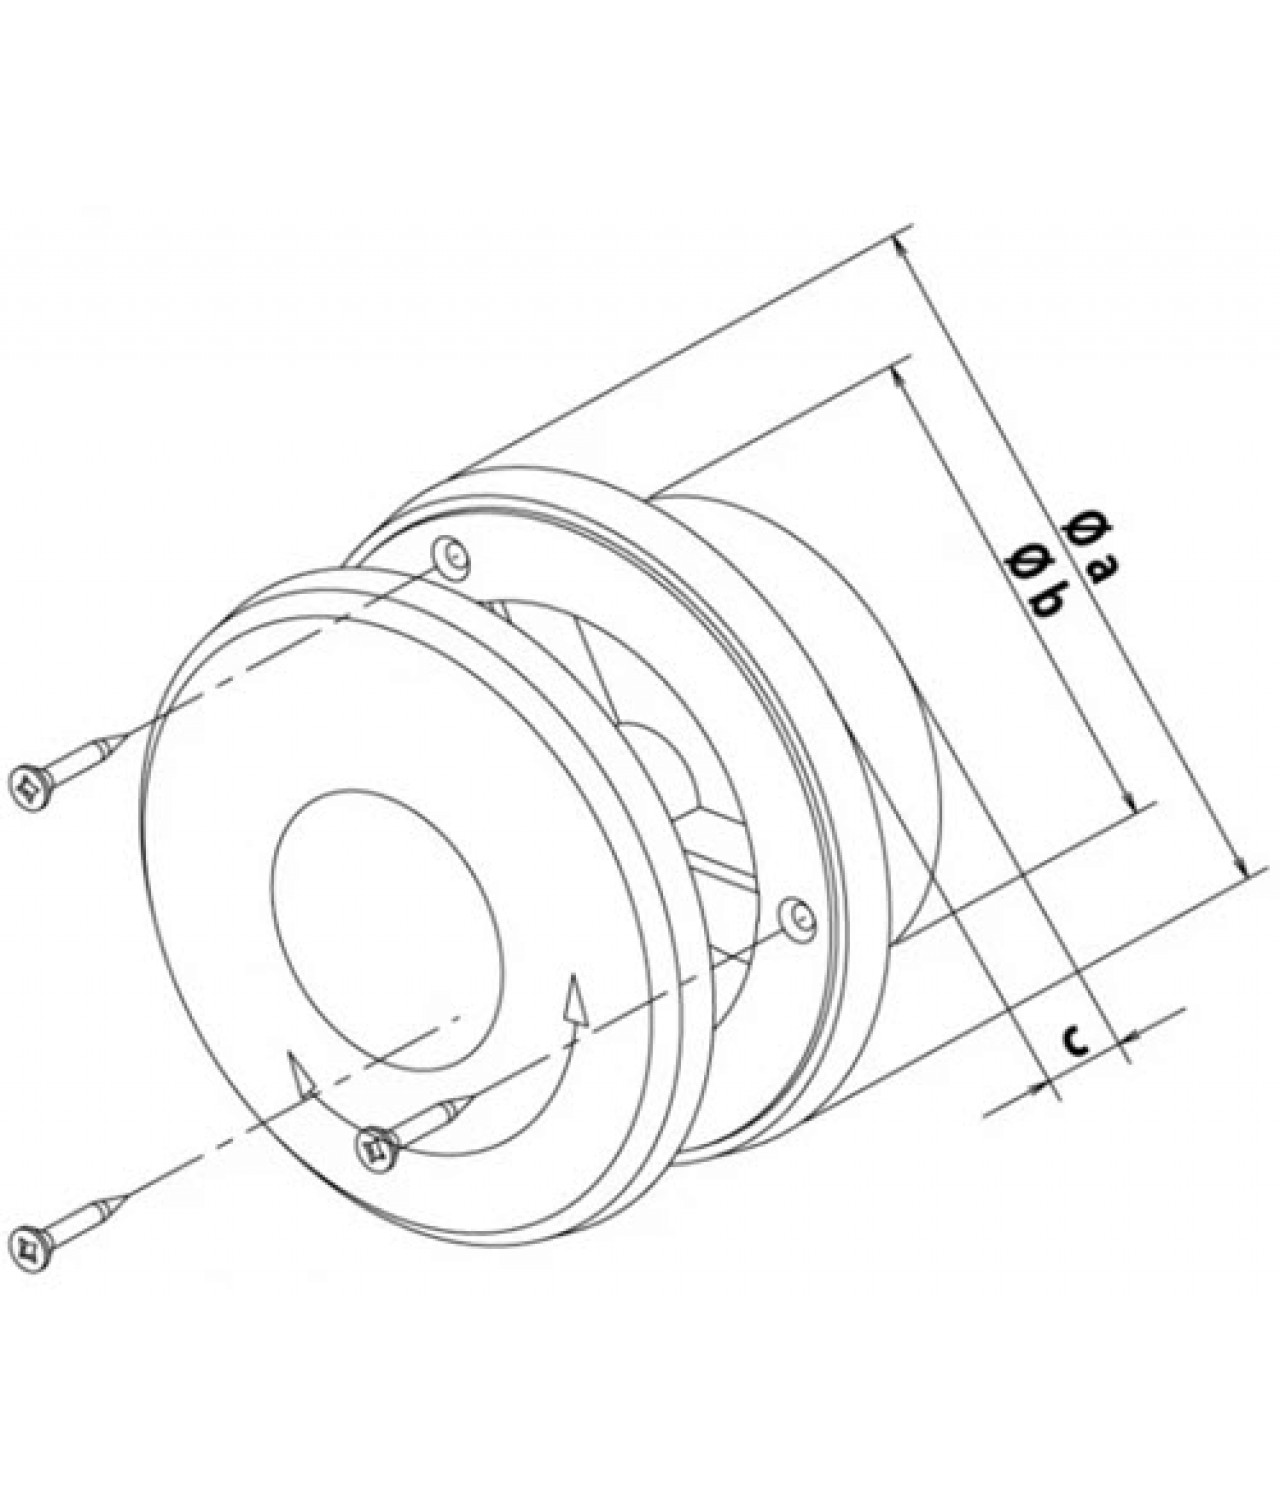 Пластиковые диффузоры AN-ABS 125 мм - чертеж